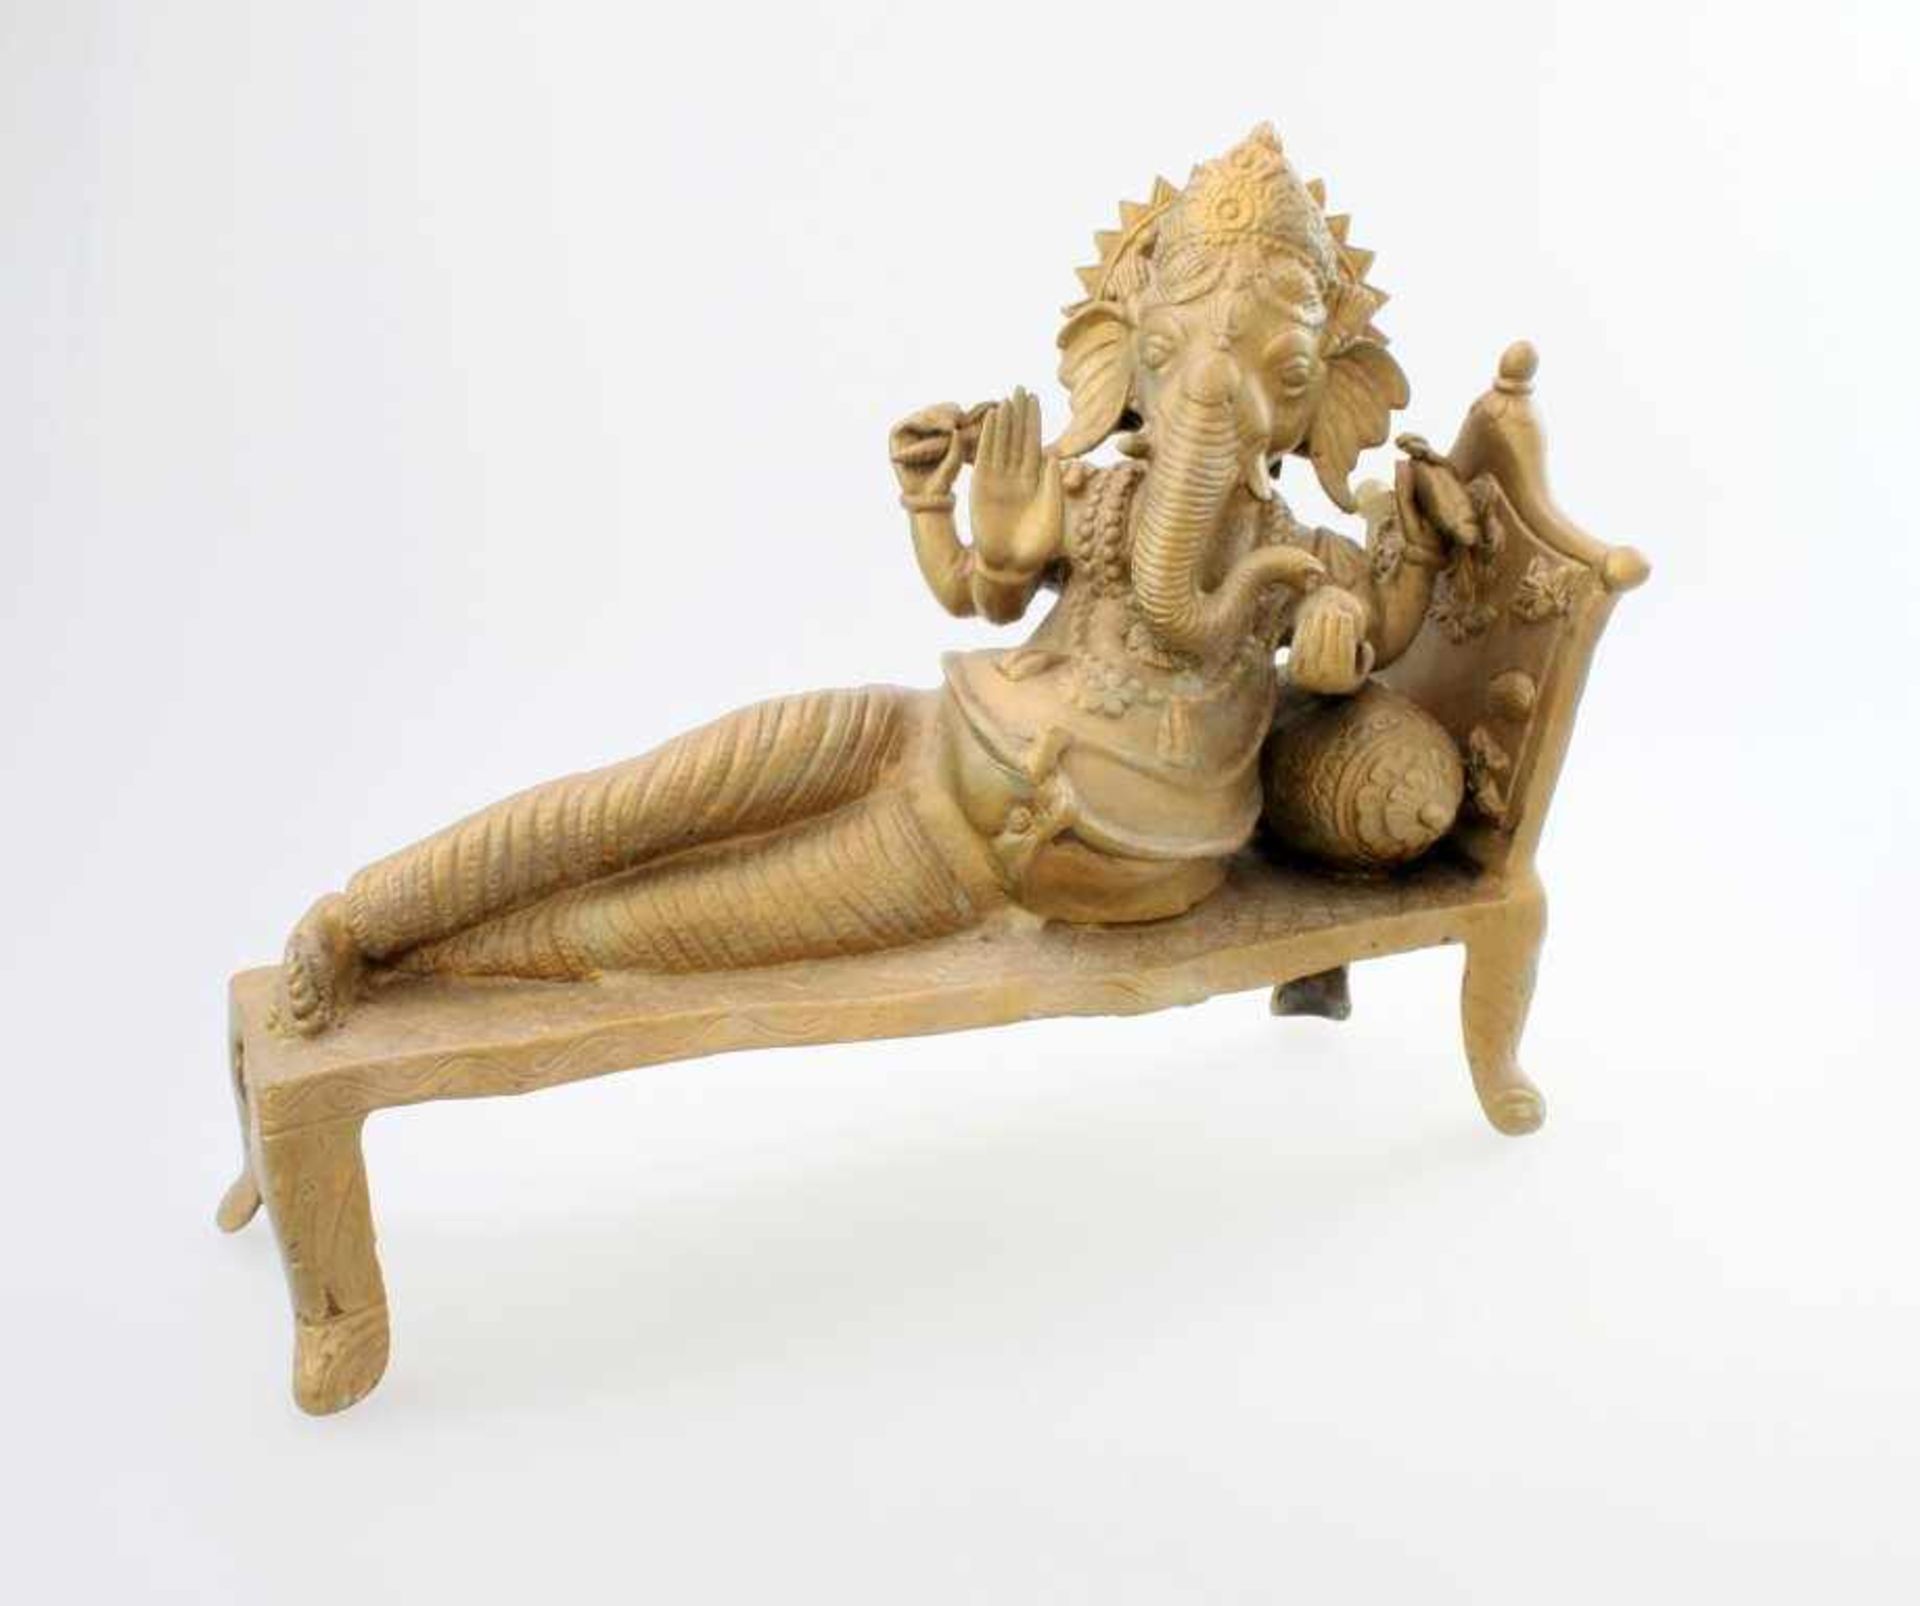 Liegender Ganesha - Indien Eine Hand zur Segnung erhoben, in der anderen Hand diverse Gegenstände,